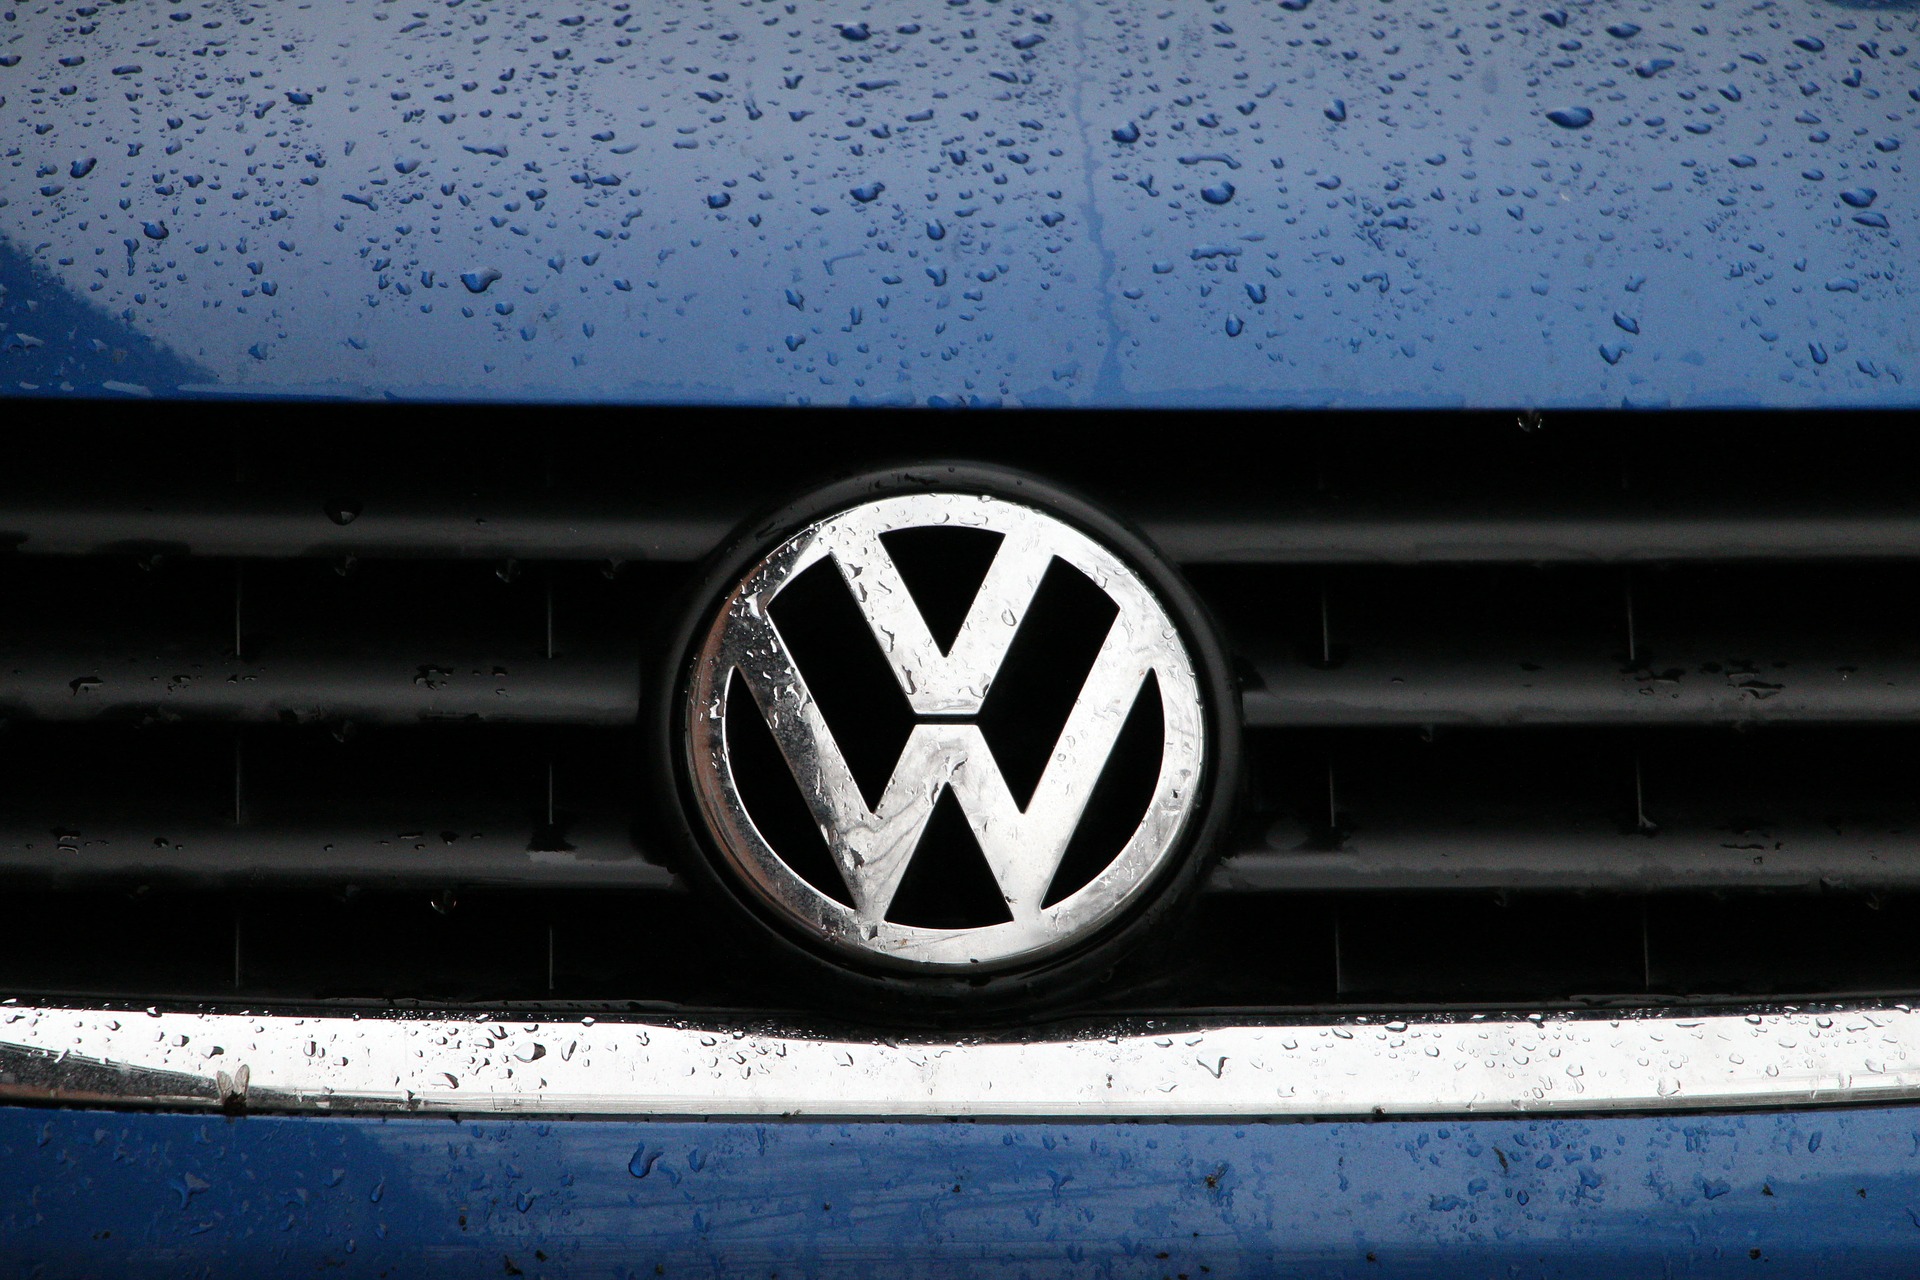 Volkswagen Abgasskandal Rechtsanwalt Ingo Gasser